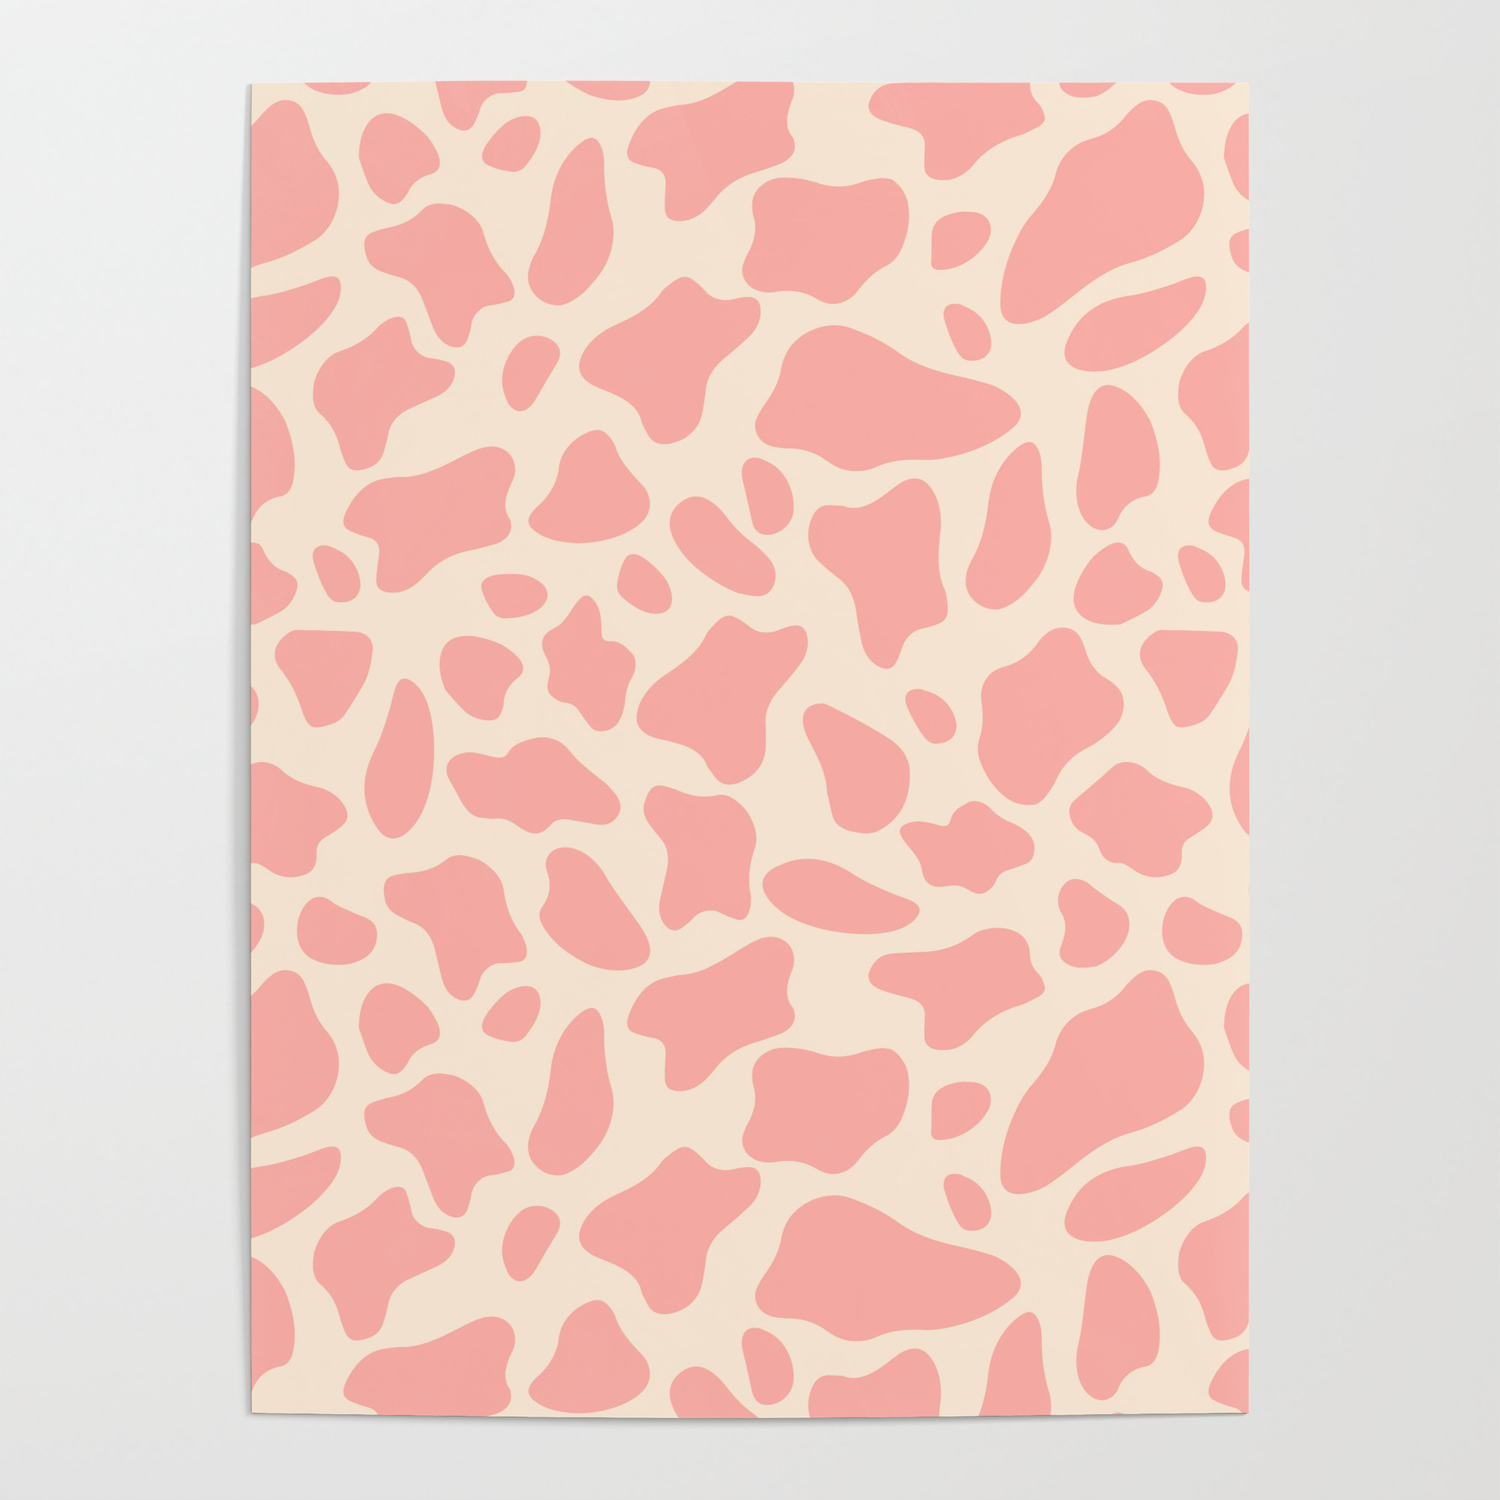 Aesthetic Vsco Pink White Pattern Poster by aestheticvsco